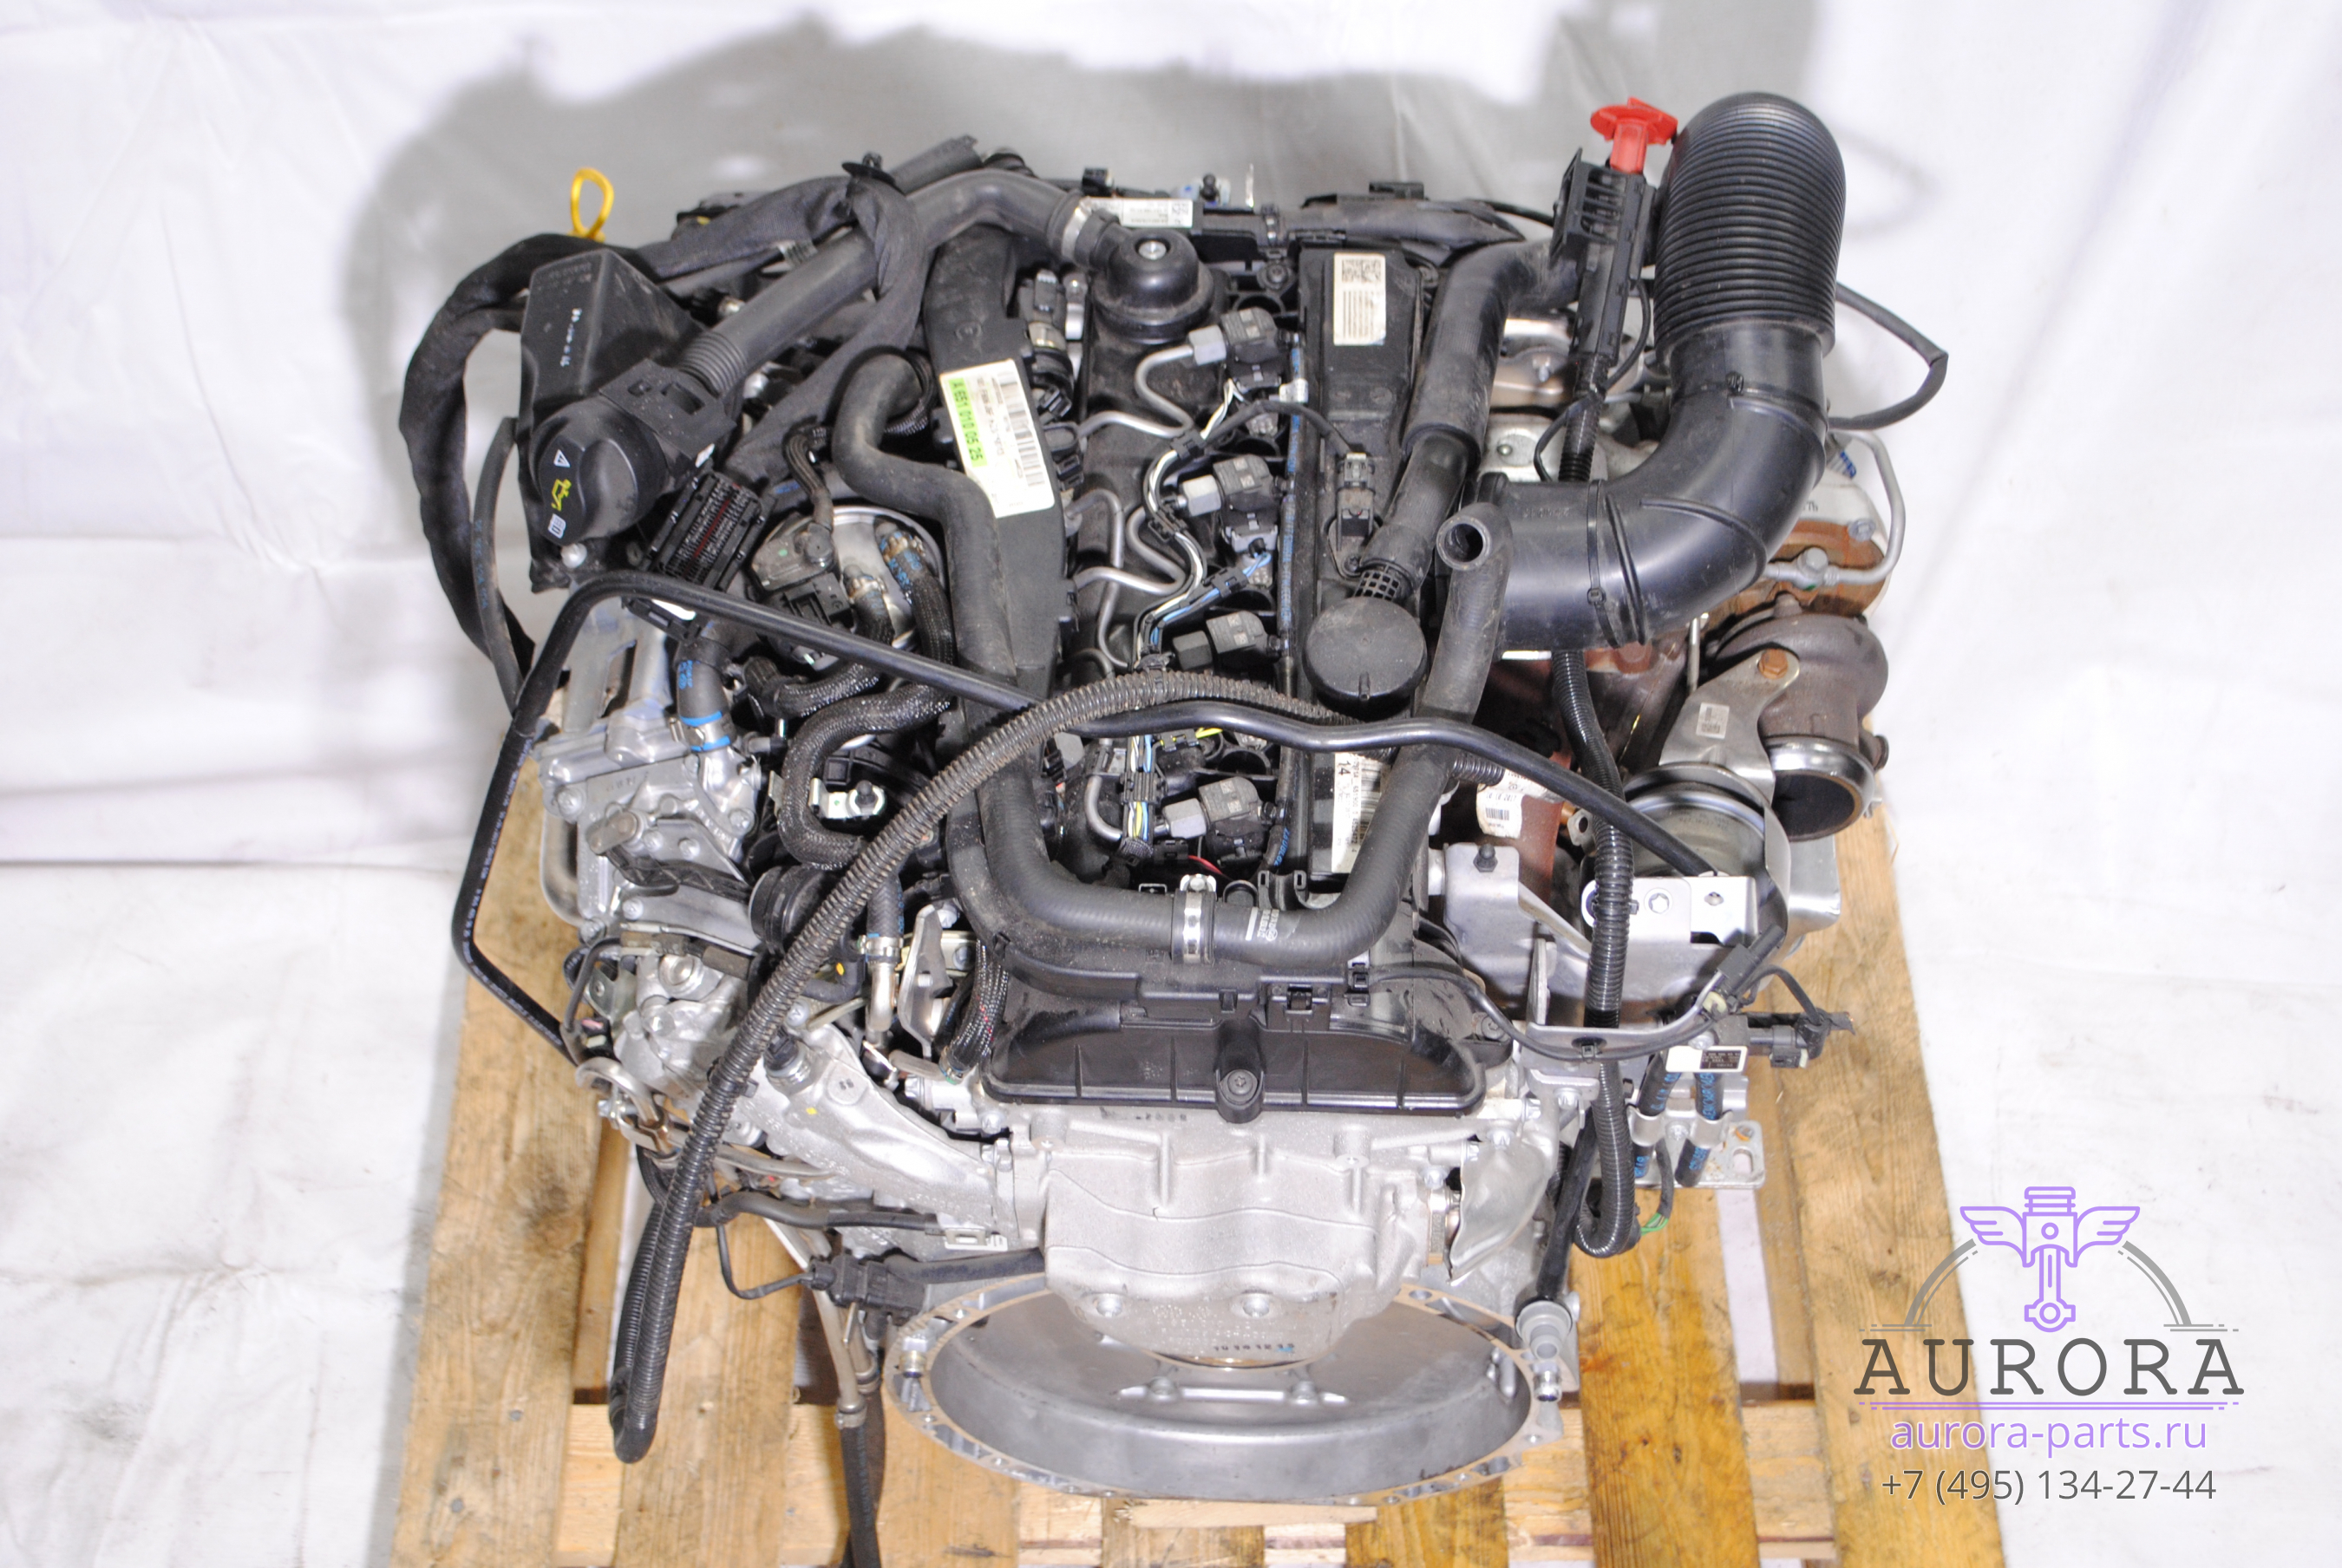 Двигатель в сборе  2.2 CDi OM 651 (17г.в. пробег 11 тыс. км.) без сцепления и вискомуфты.